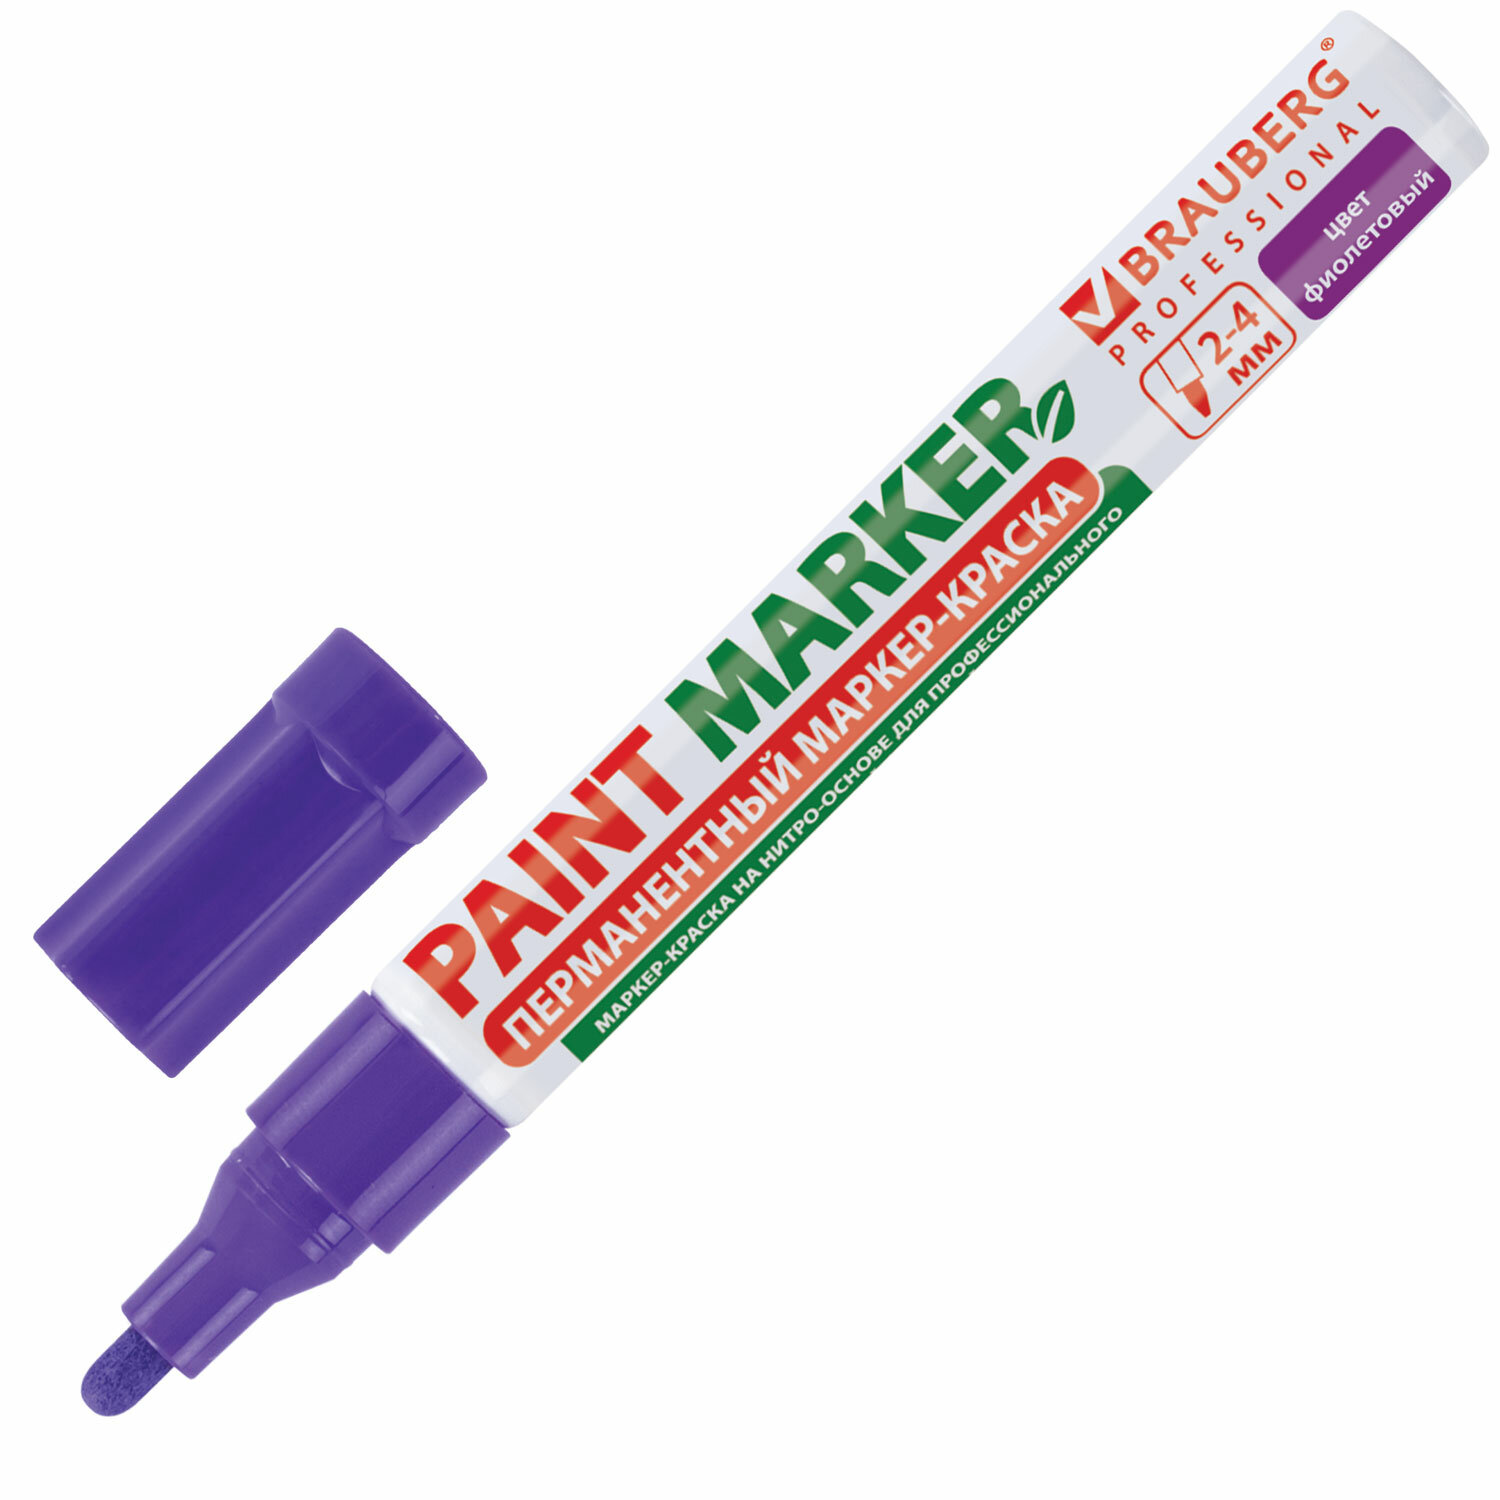 Маркер-краска лаковый Brauberg Professional 150880, 4мм, фиолетовый, 12шт соска пустышка классическая силикон 6мес с колпачком фиолетовый